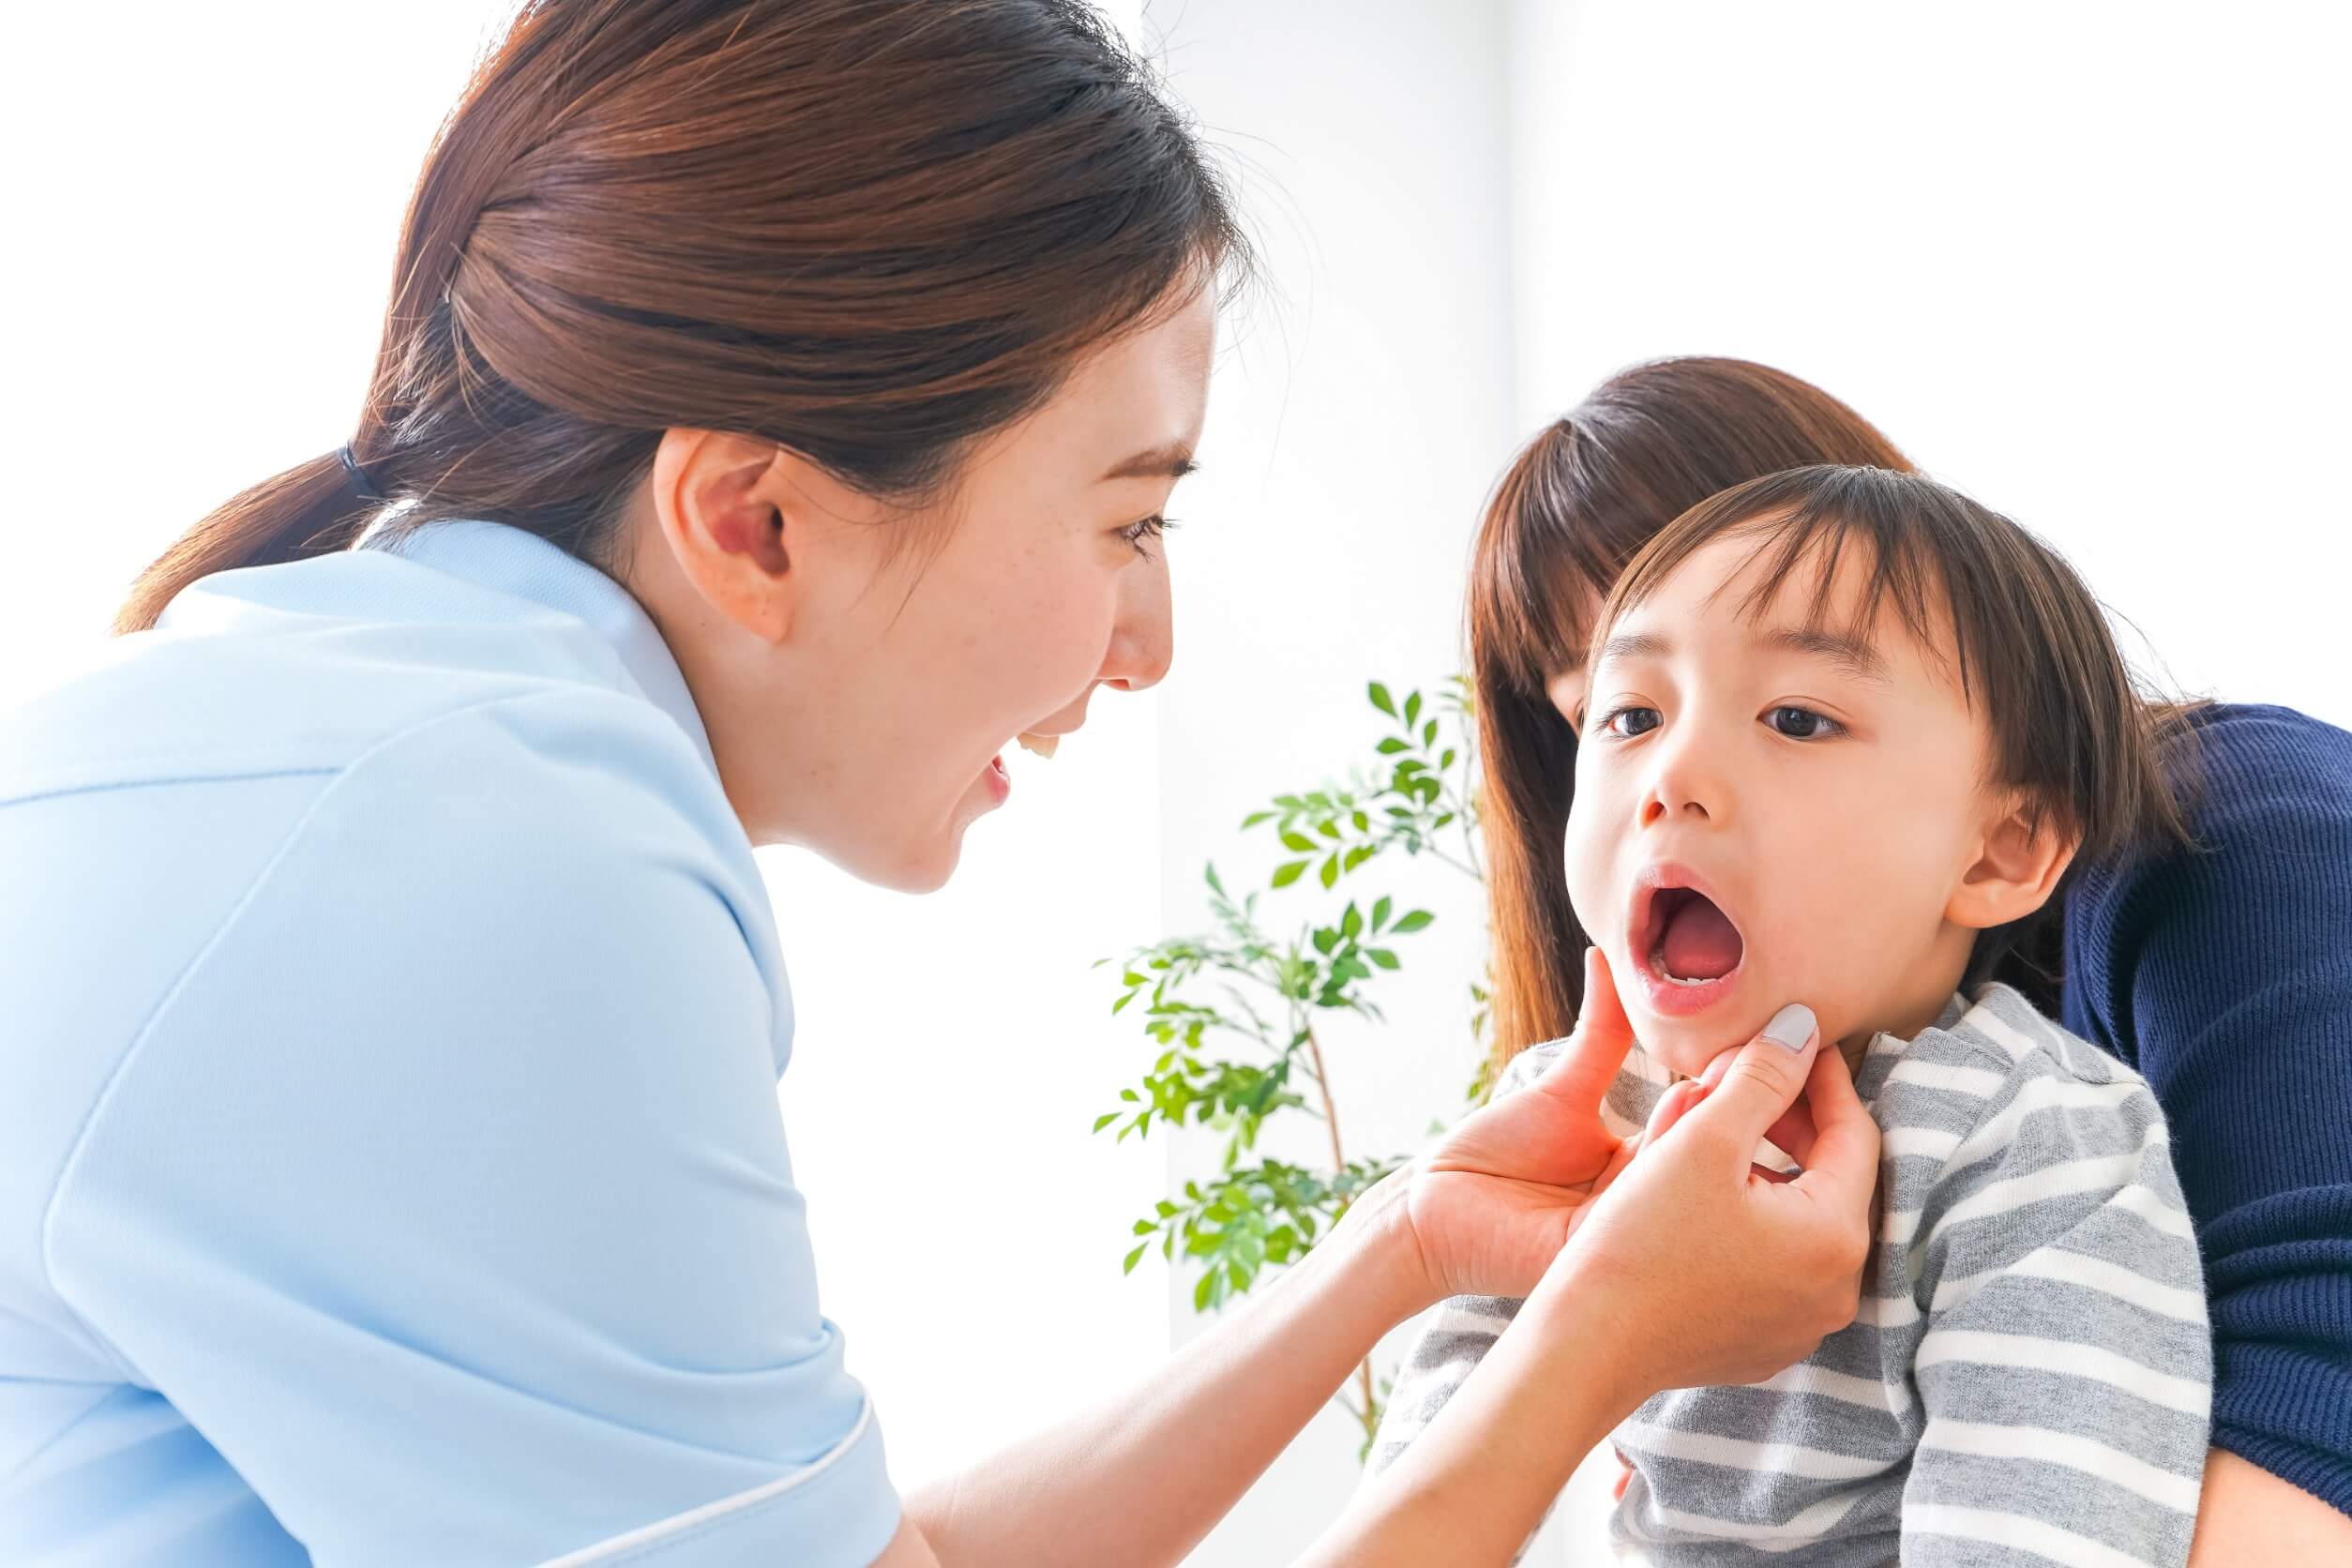 Las extracciones dentales niños requieren un profesional